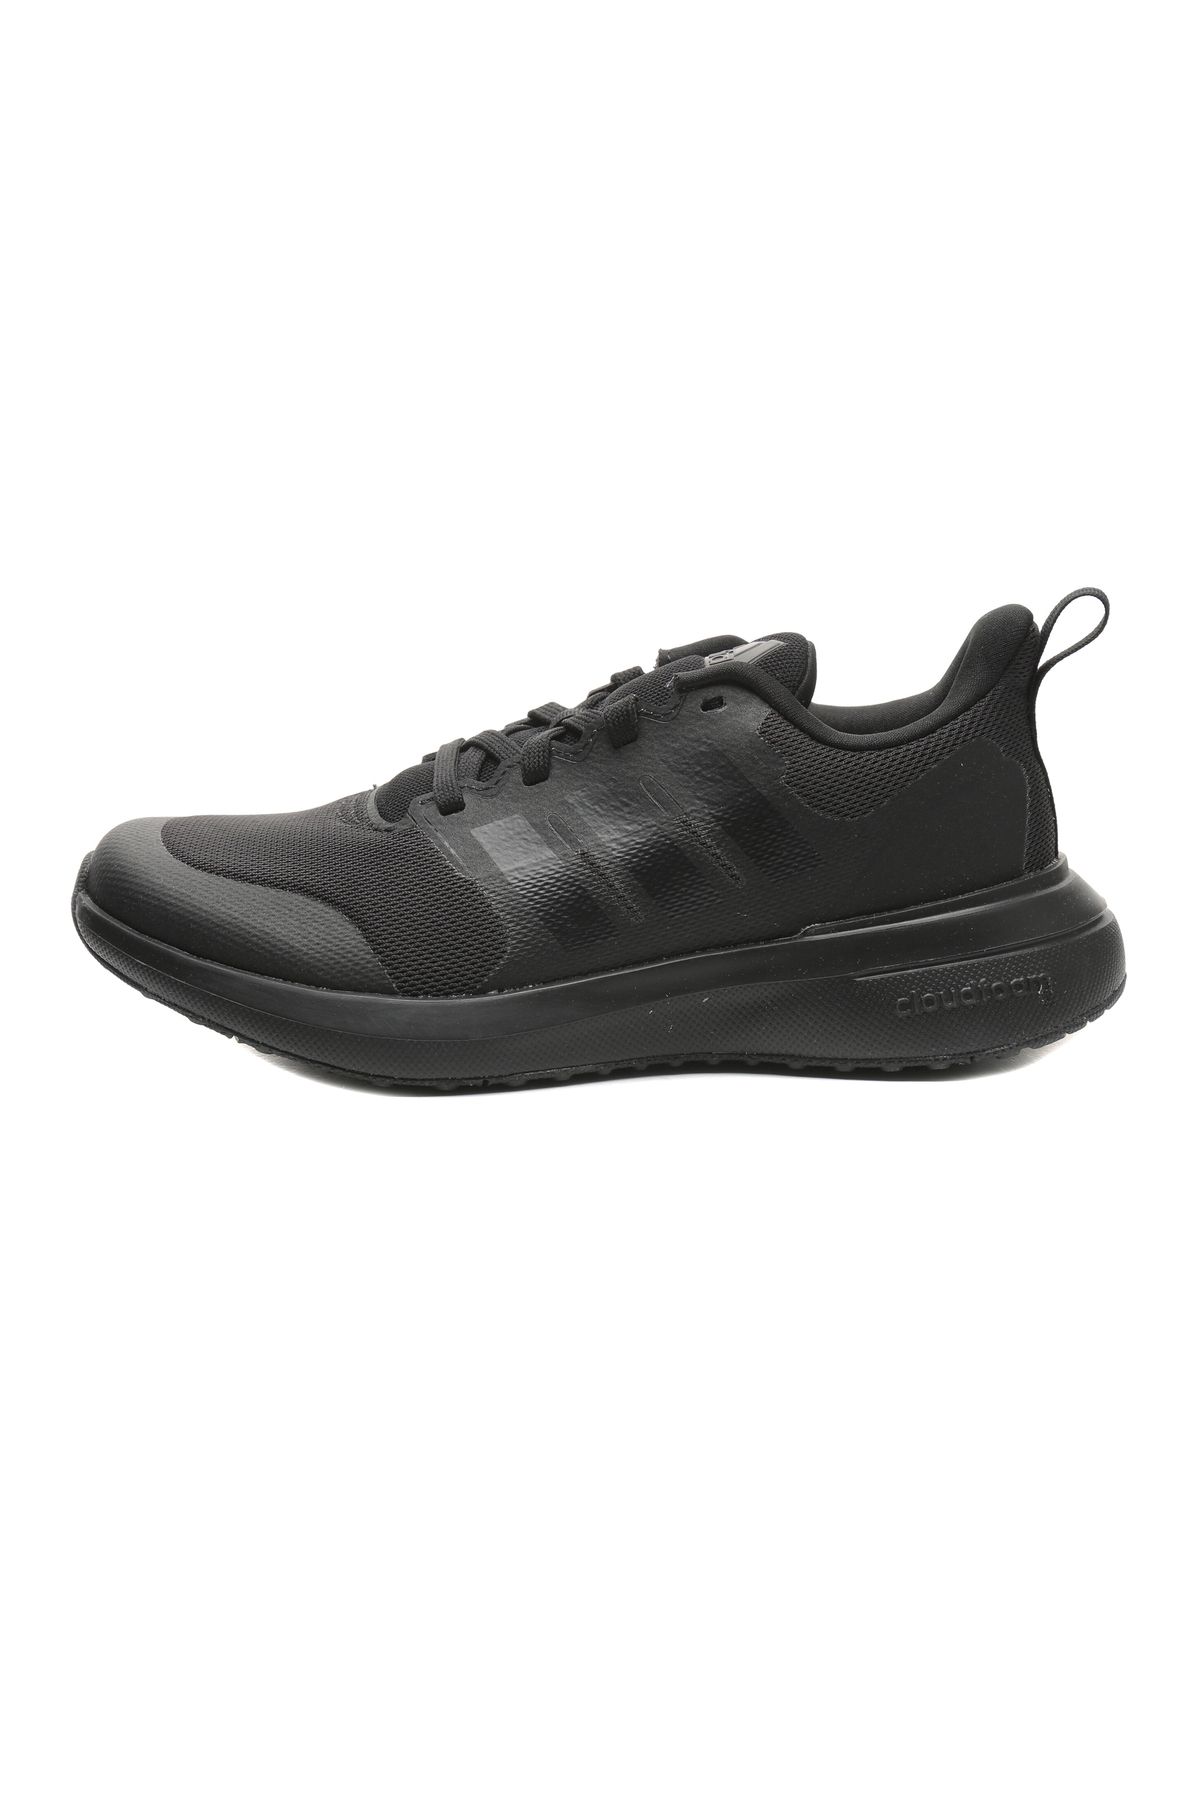 adidas Hp5431-k Fortarun 2.0 K Kadın Spor Ayakkabı Siyah